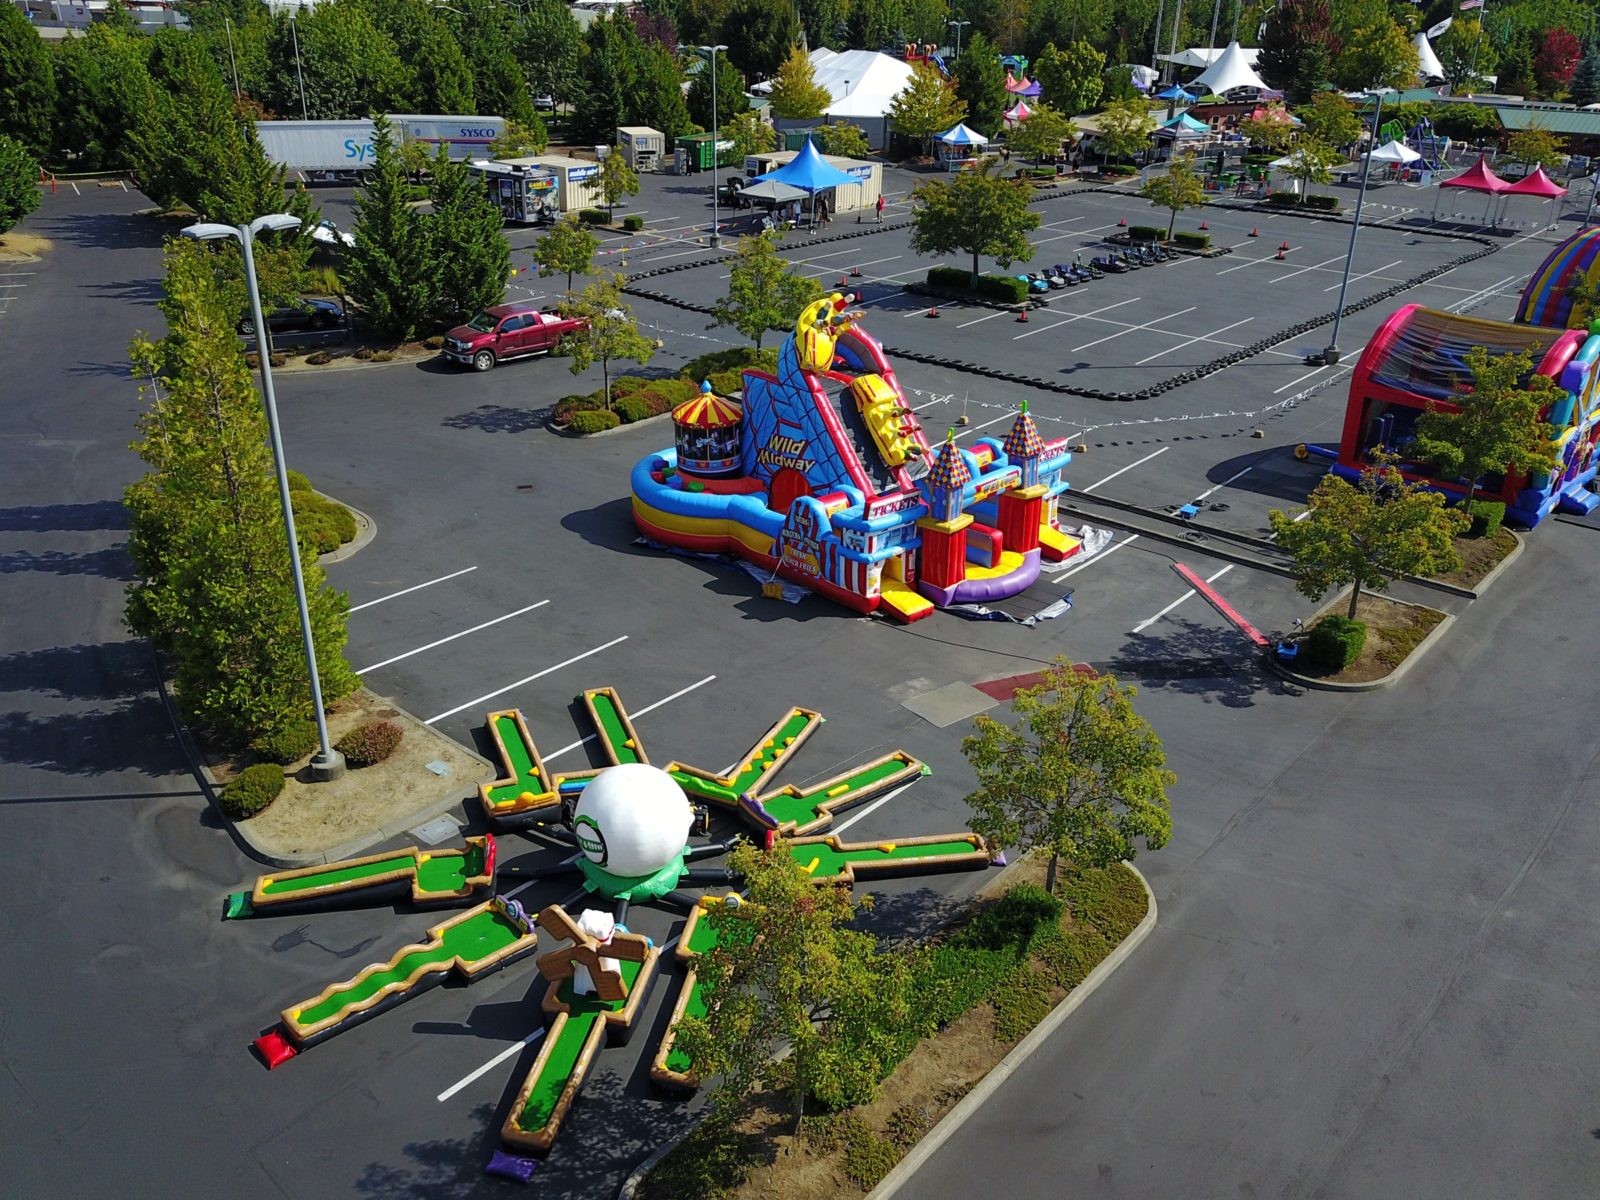 Midway Amusement Park Obstacle Course